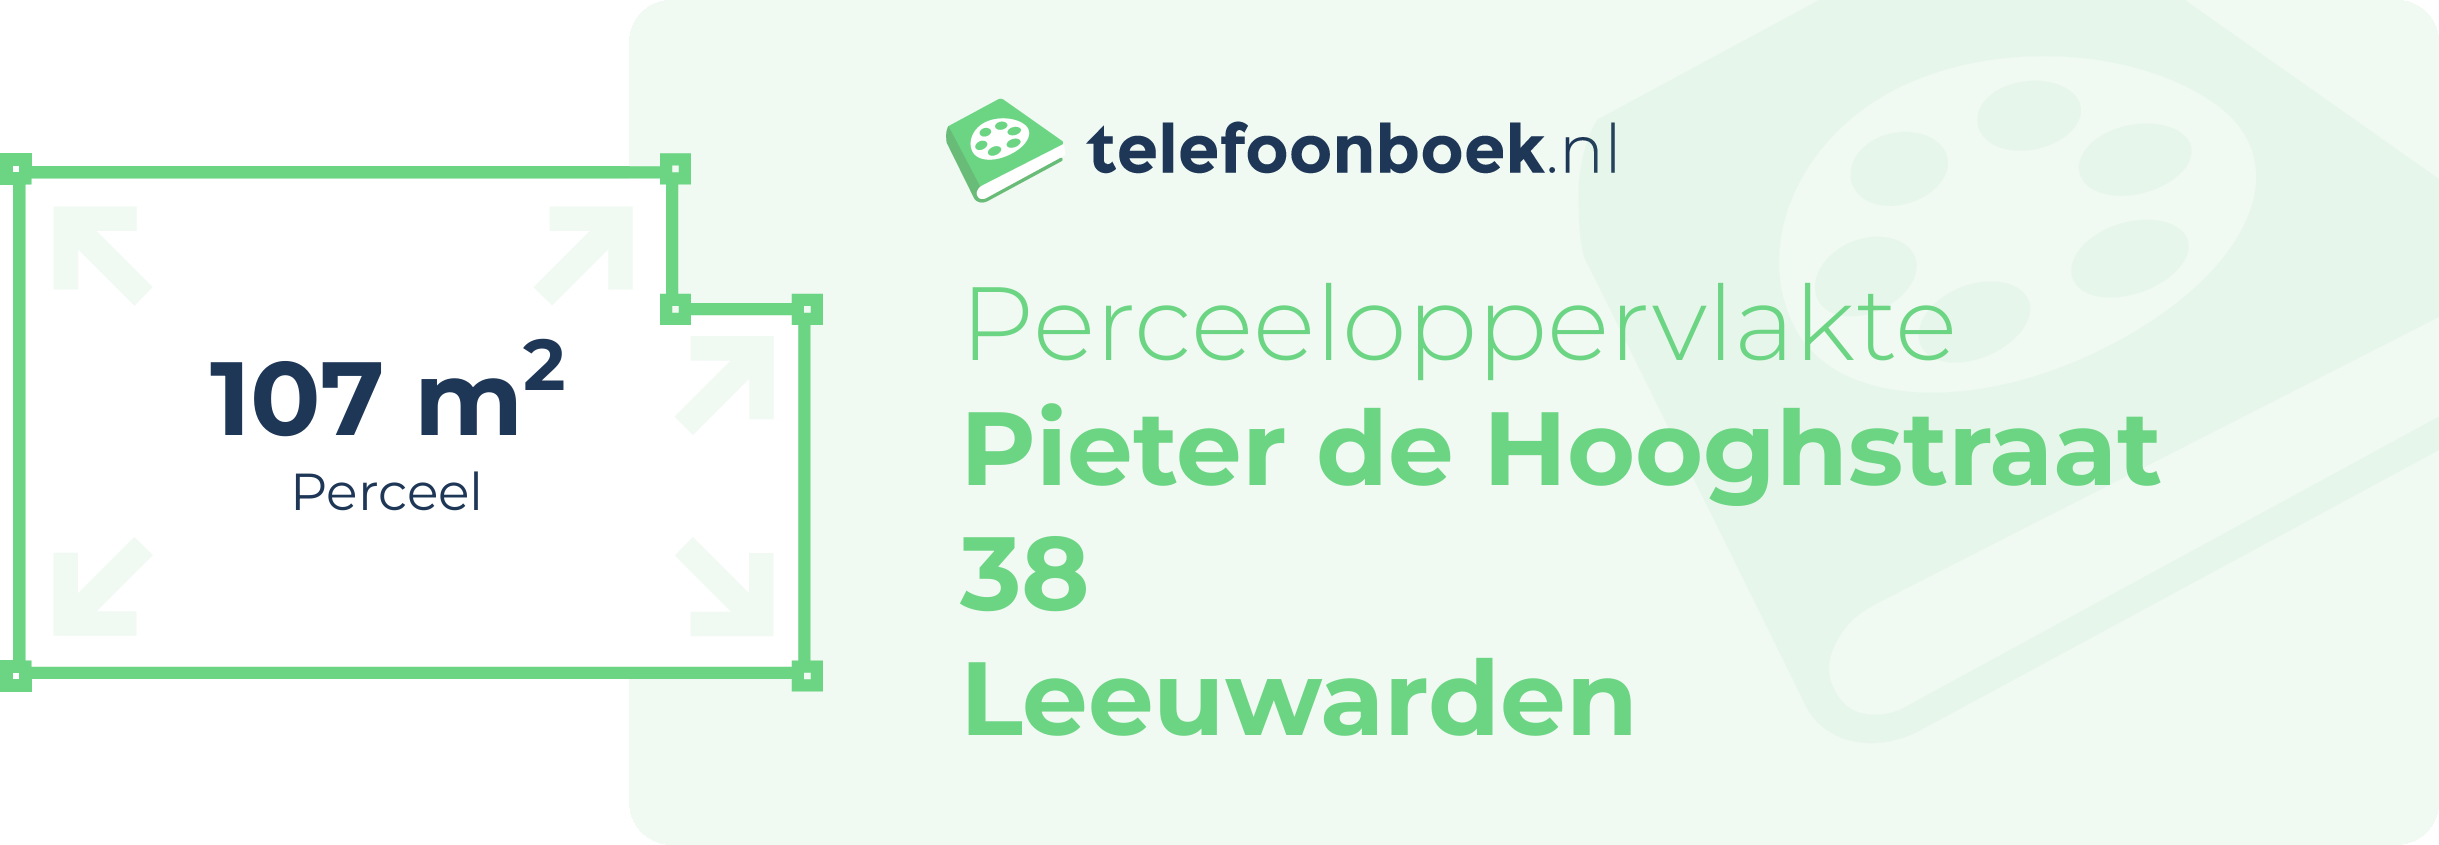 Perceeloppervlakte Pieter De Hooghstraat 38 Leeuwarden